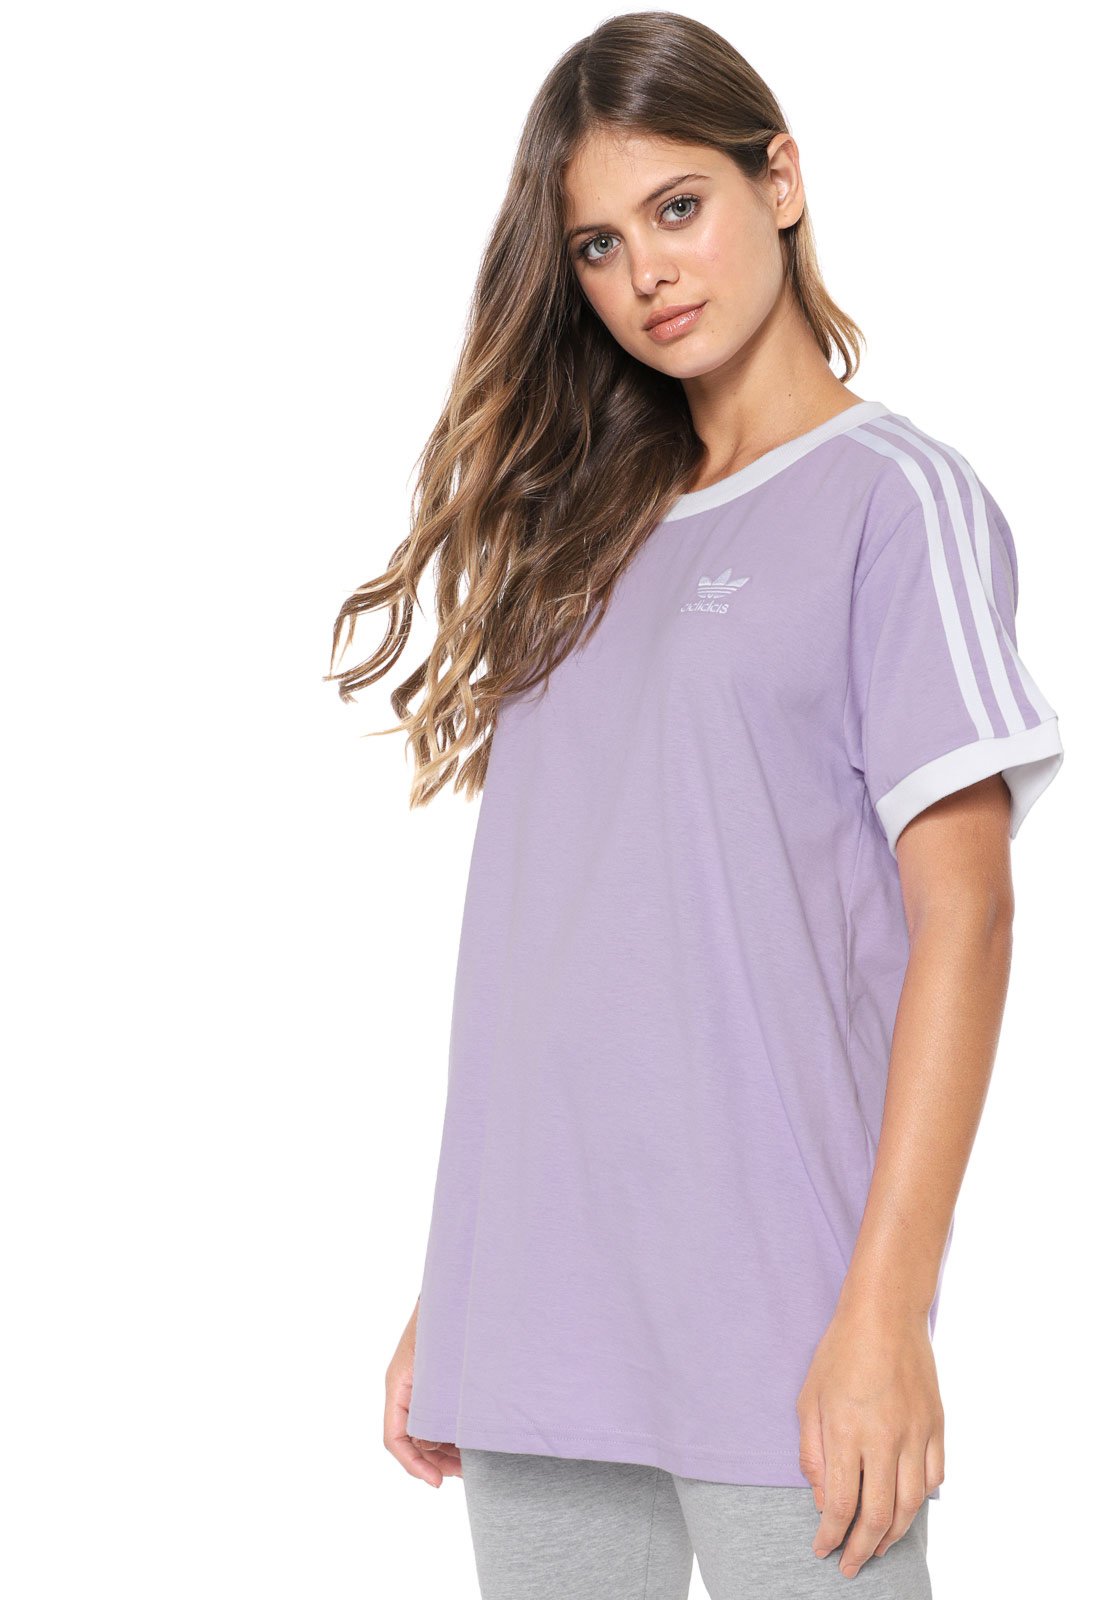 Camiseta Adidas Essentials 3-Stripes Feminina Lilas